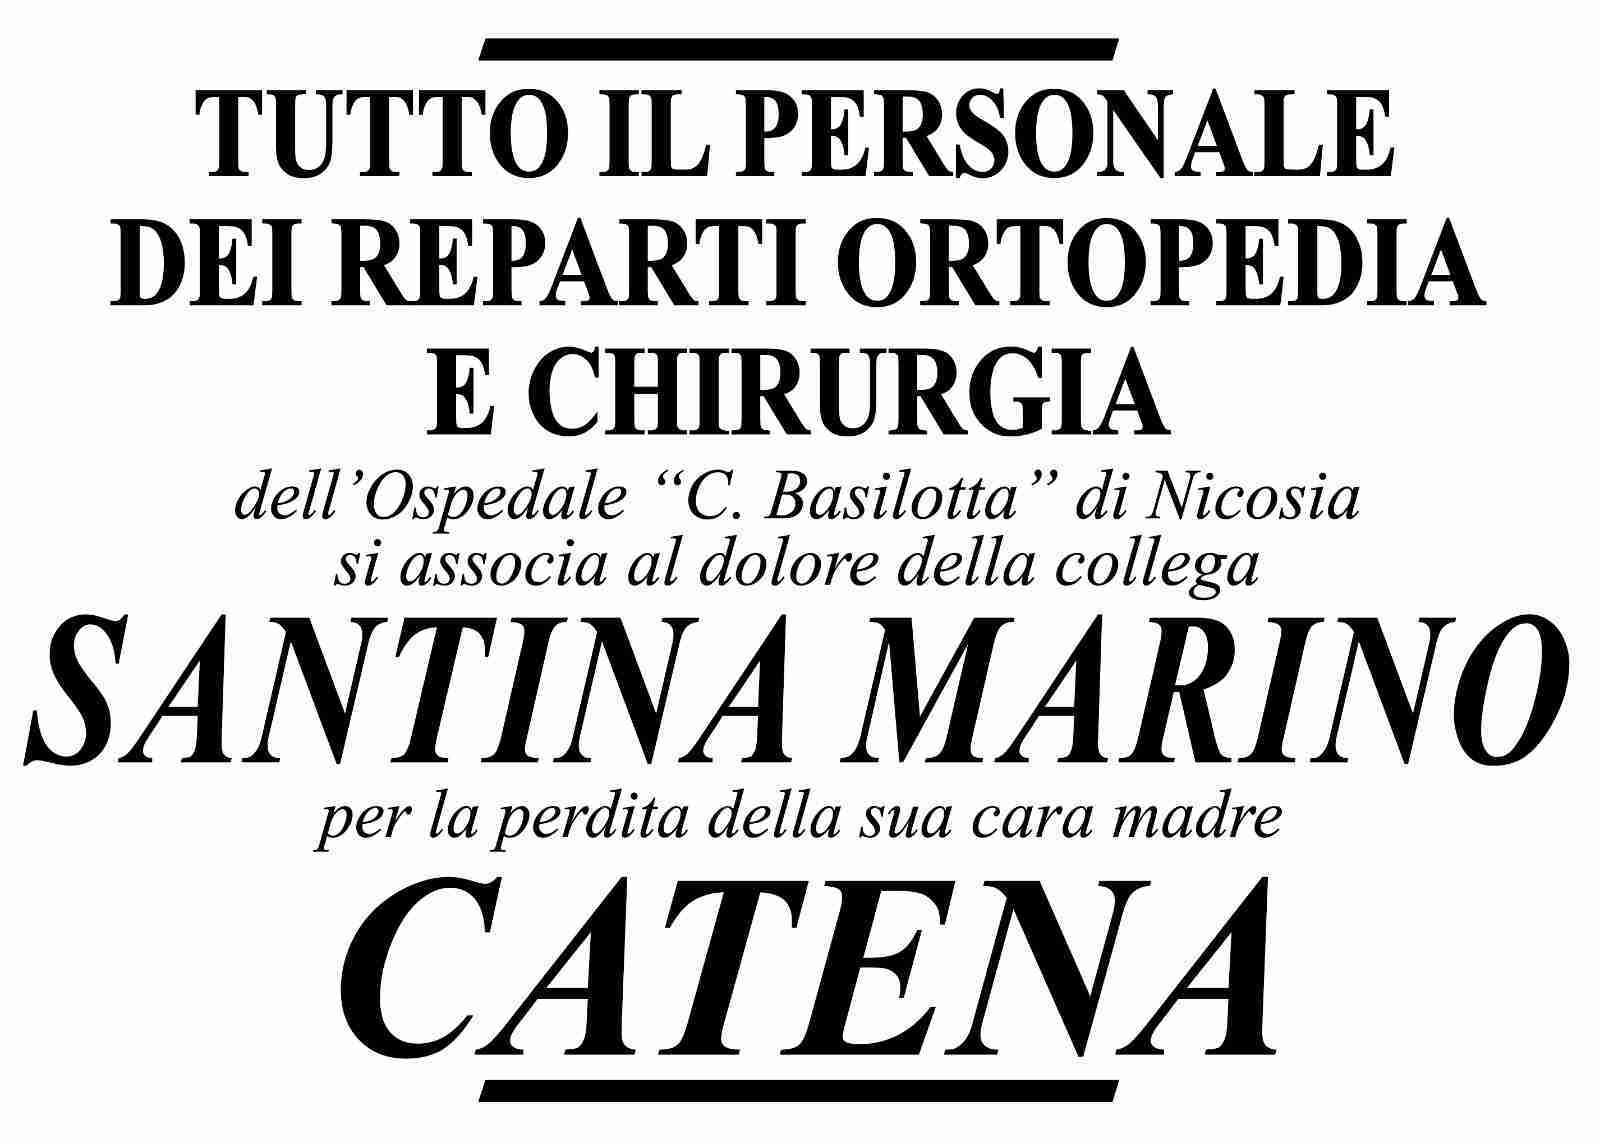 Catena Marino